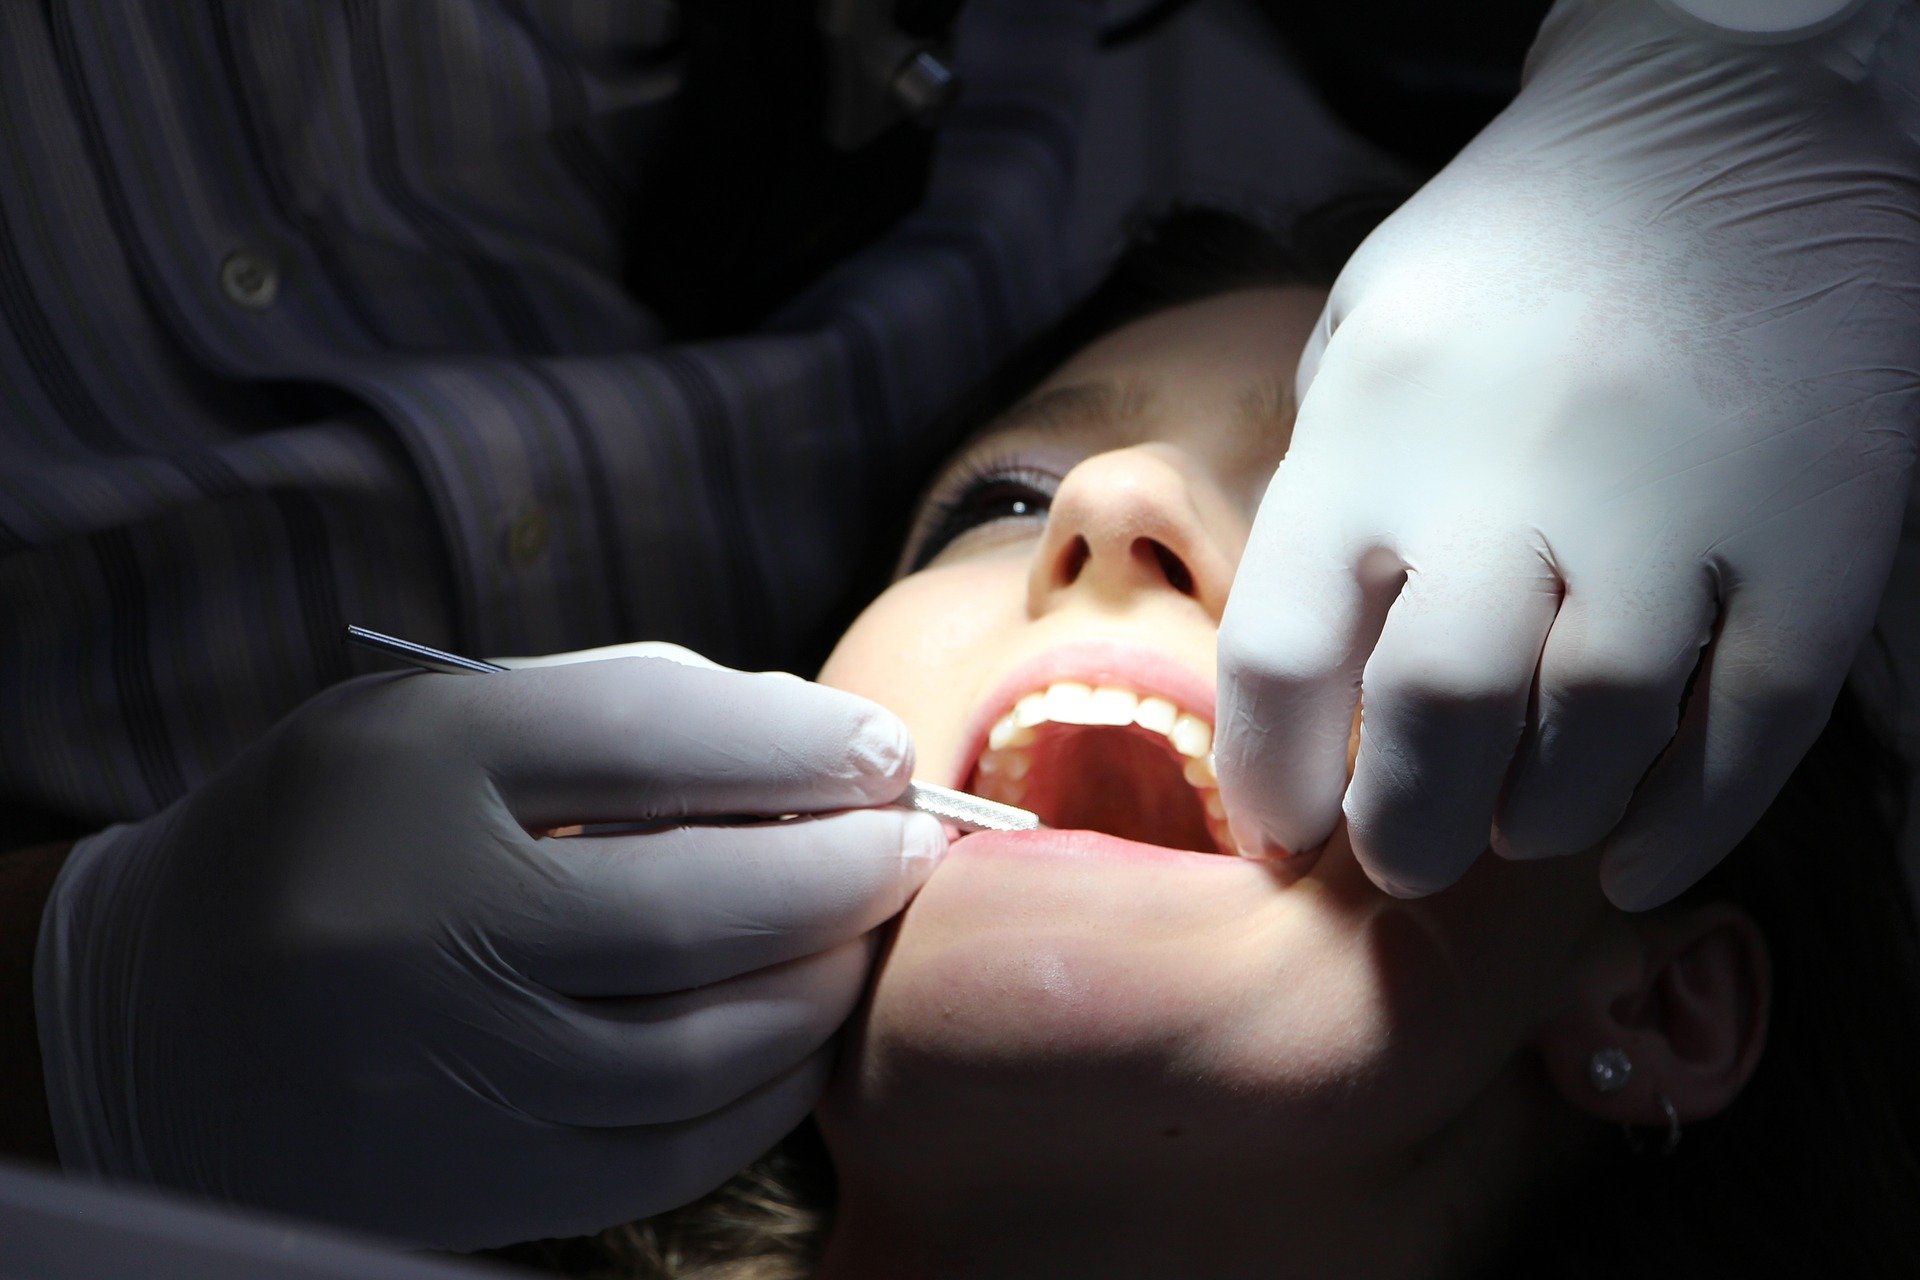 Barcelona tendrá un servicio de dentista municipal a precios sociales